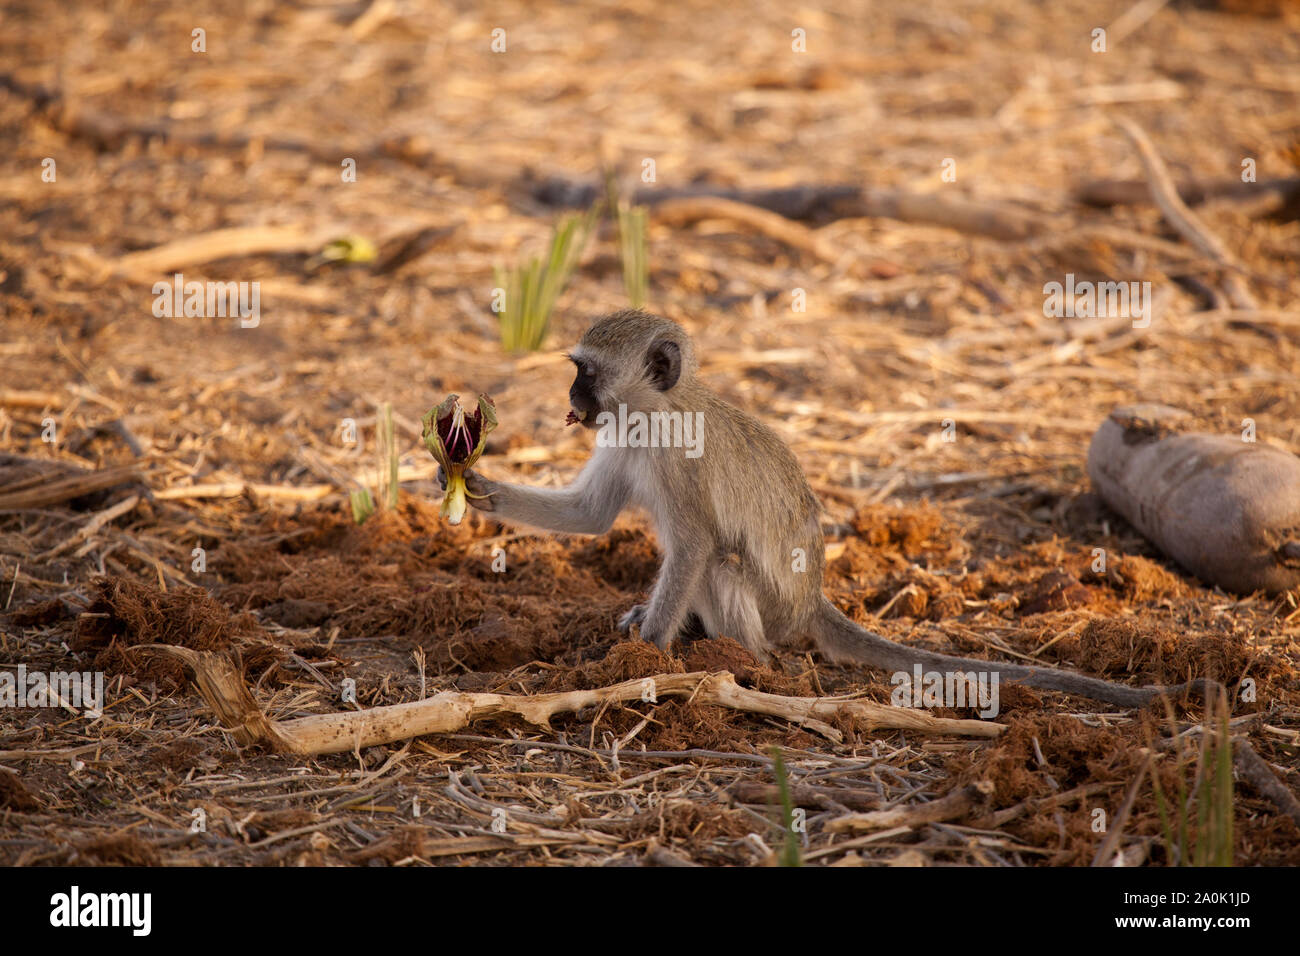 Un jeune singe mange la fleur de l'arbre Kigelia africana, sasuage, dans l'ombre, le Ruaha National Park, Tanzanie Banque D'Images